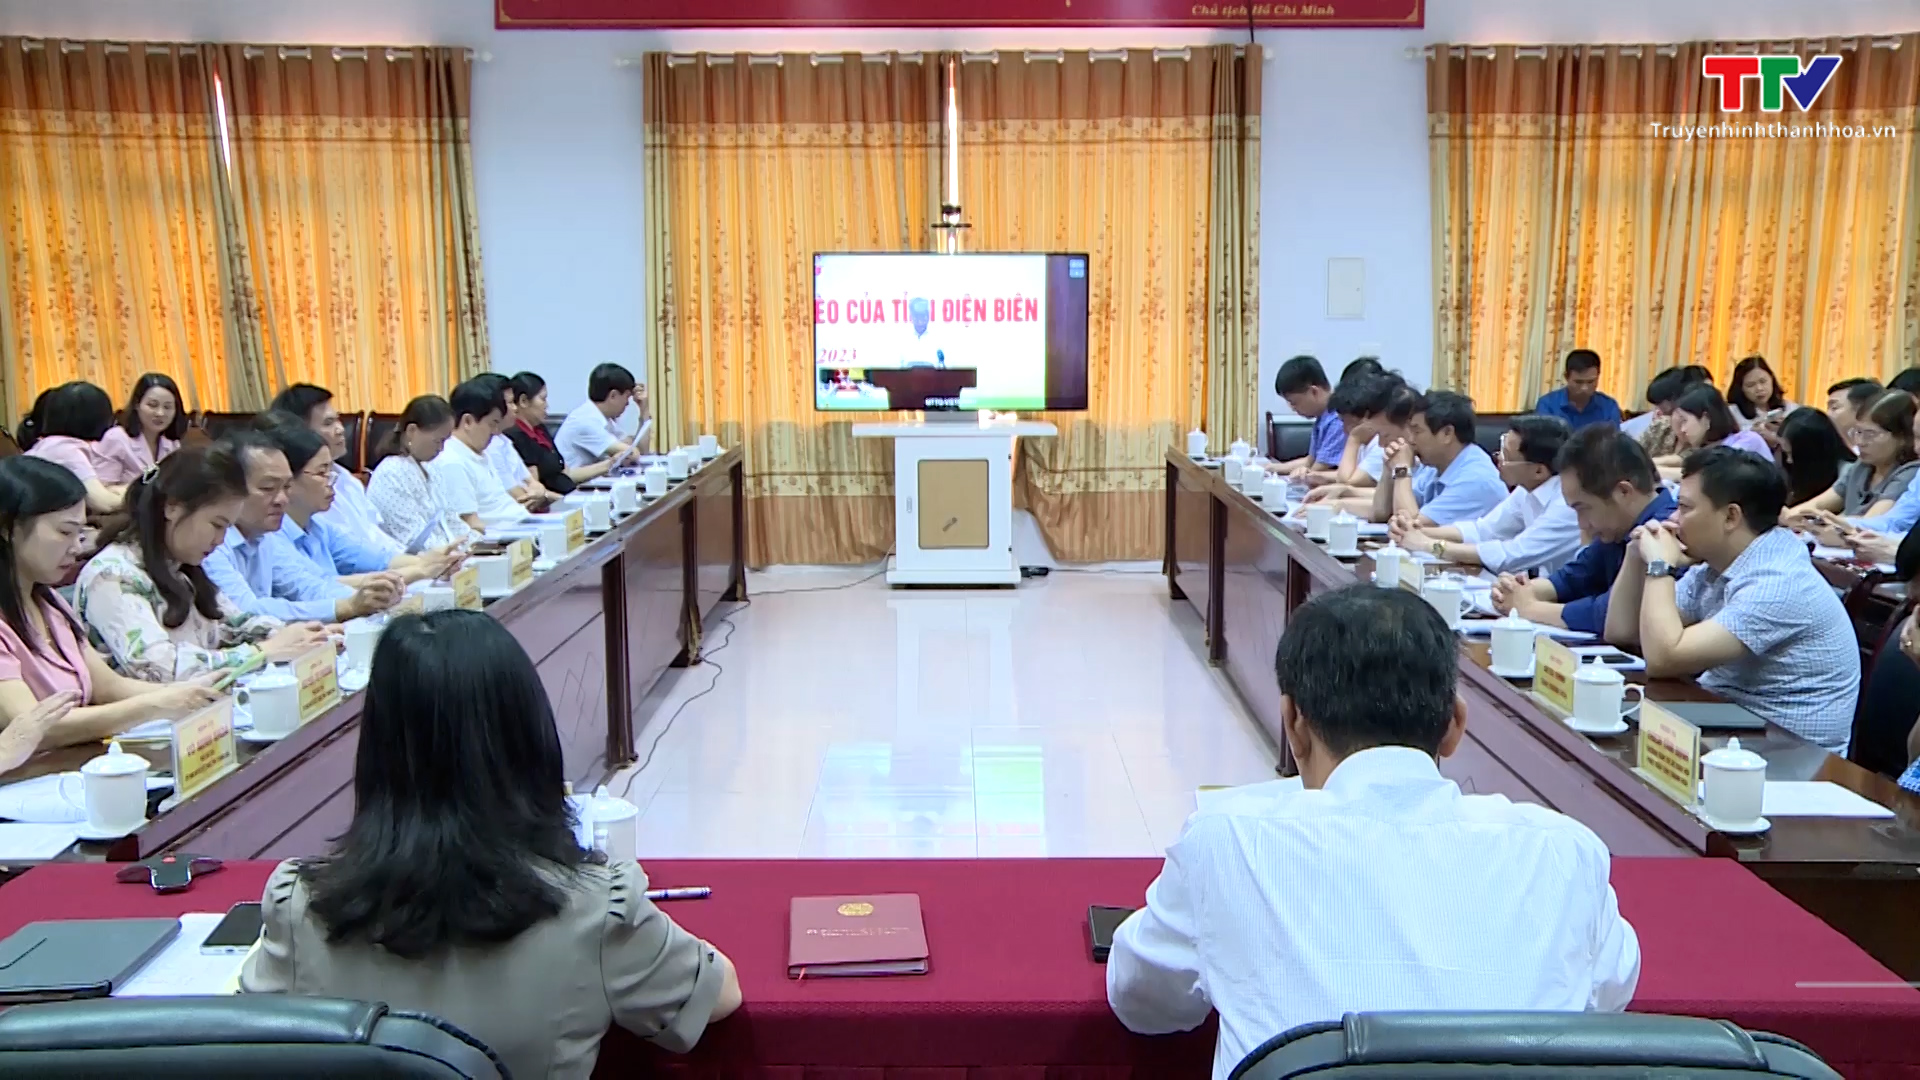 Phát động ủng hộ xây nhà đại đoàn kết cho hộ nghèo tỉnh Điện Biên - Ảnh 1.